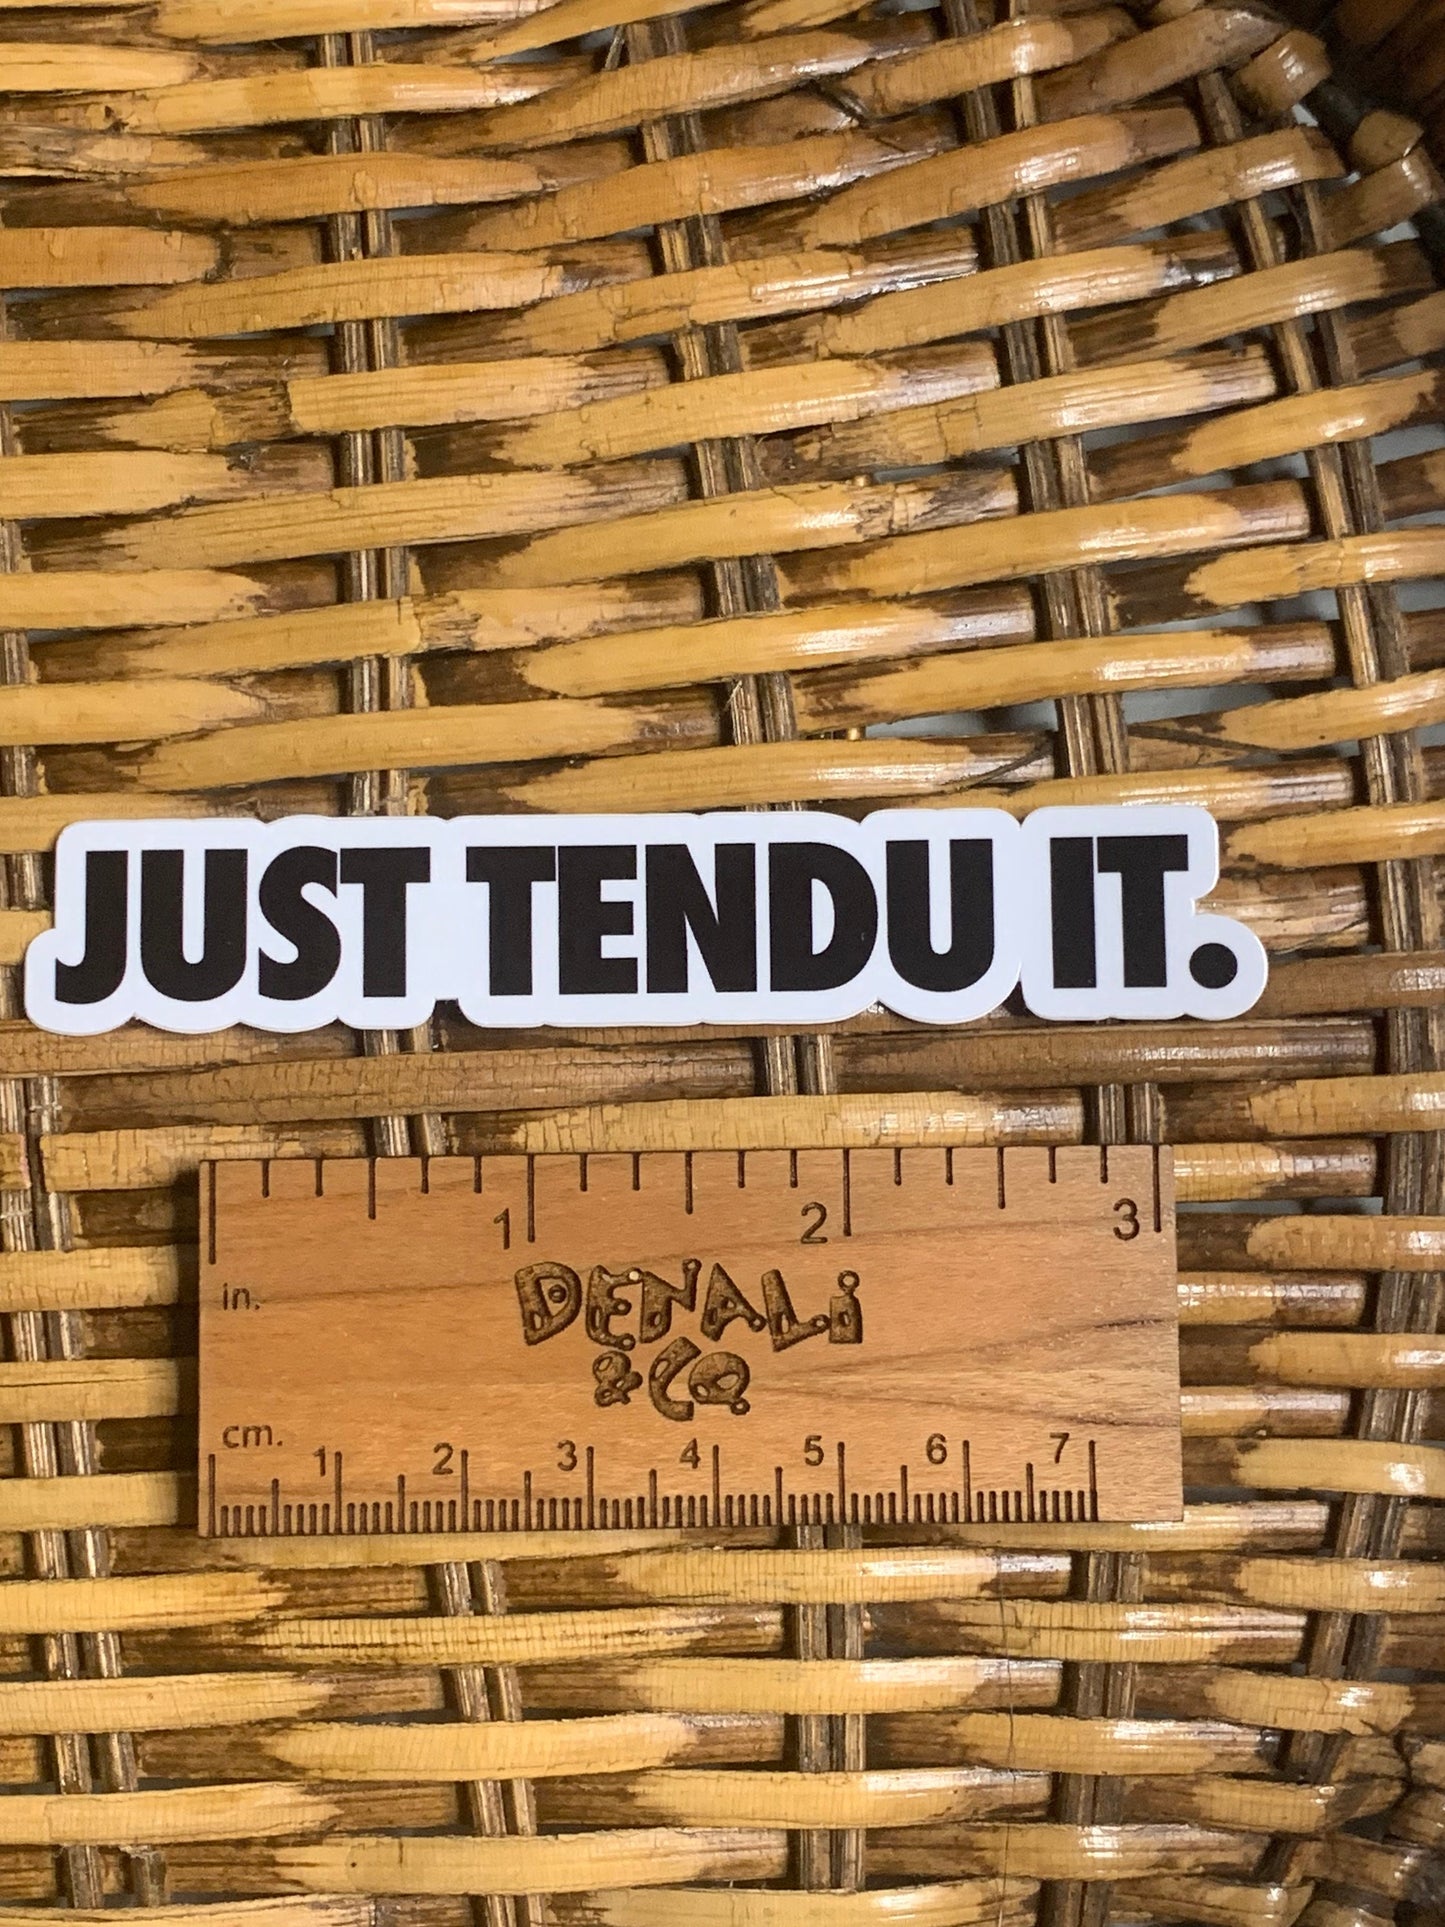 Just Tendu The OG Logo Vinyl Dance Sticker, Vinyl Decal, Laptop Sticker, Dance Sticker, Gifts For Dancers,